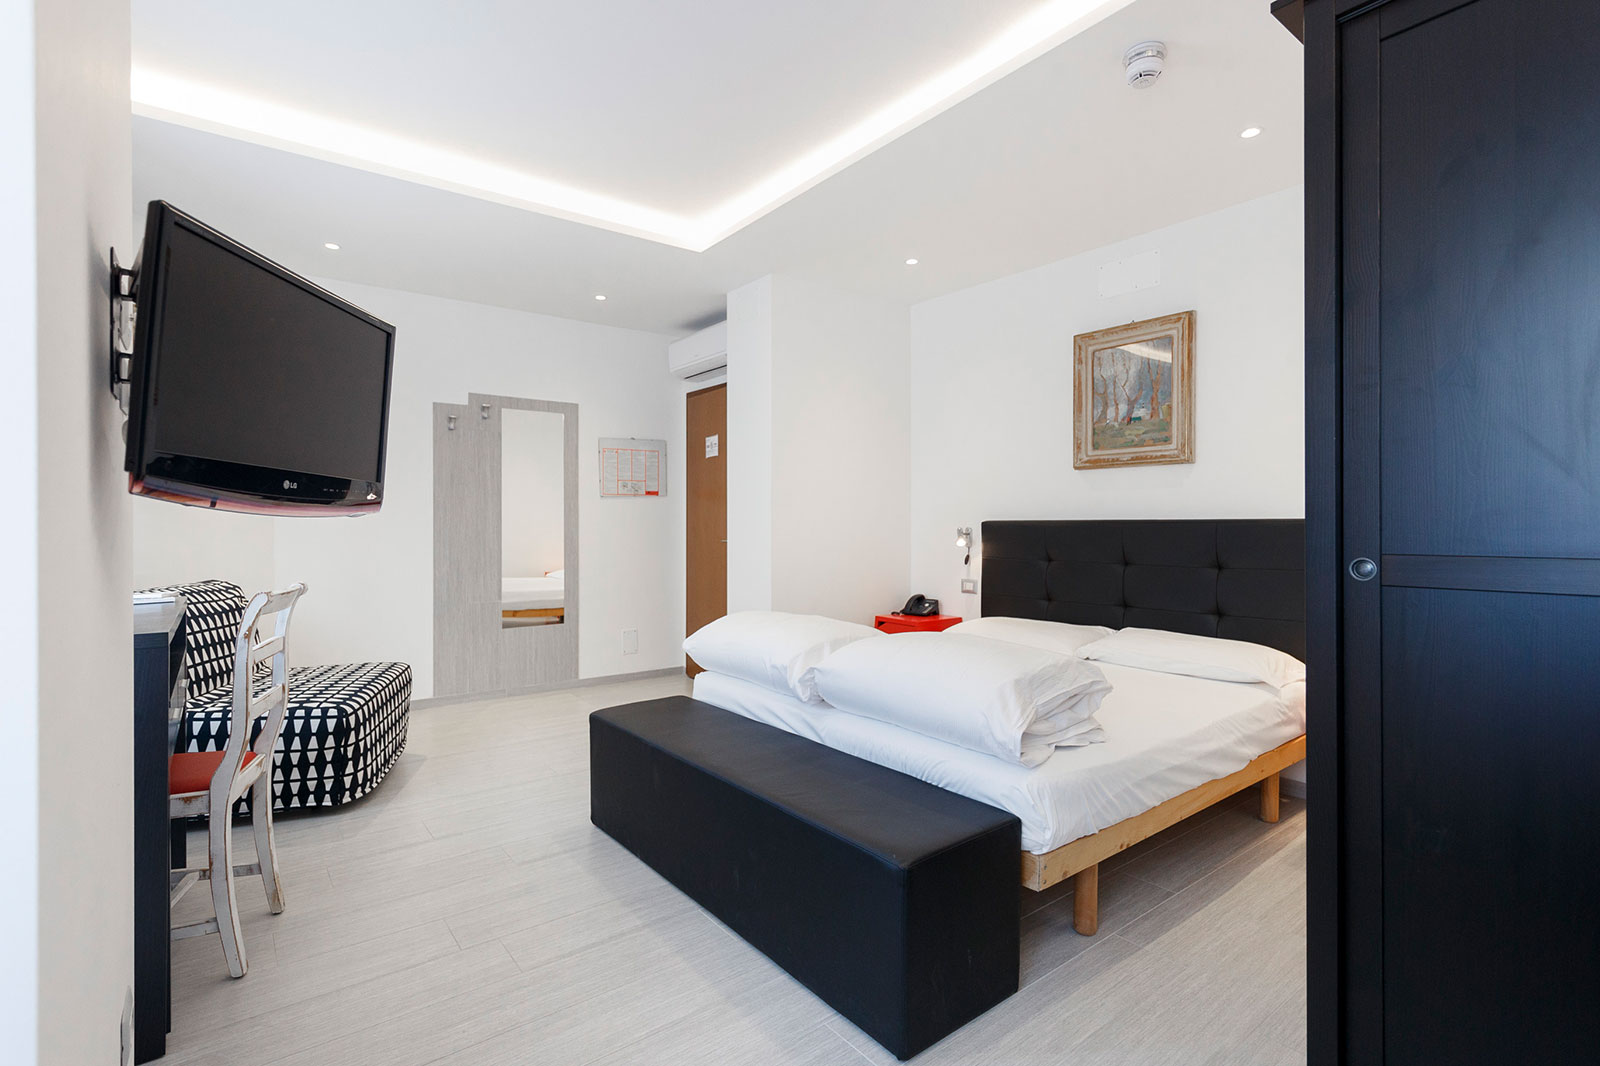 Room Hotel SoleHoliday - Arco - Trento